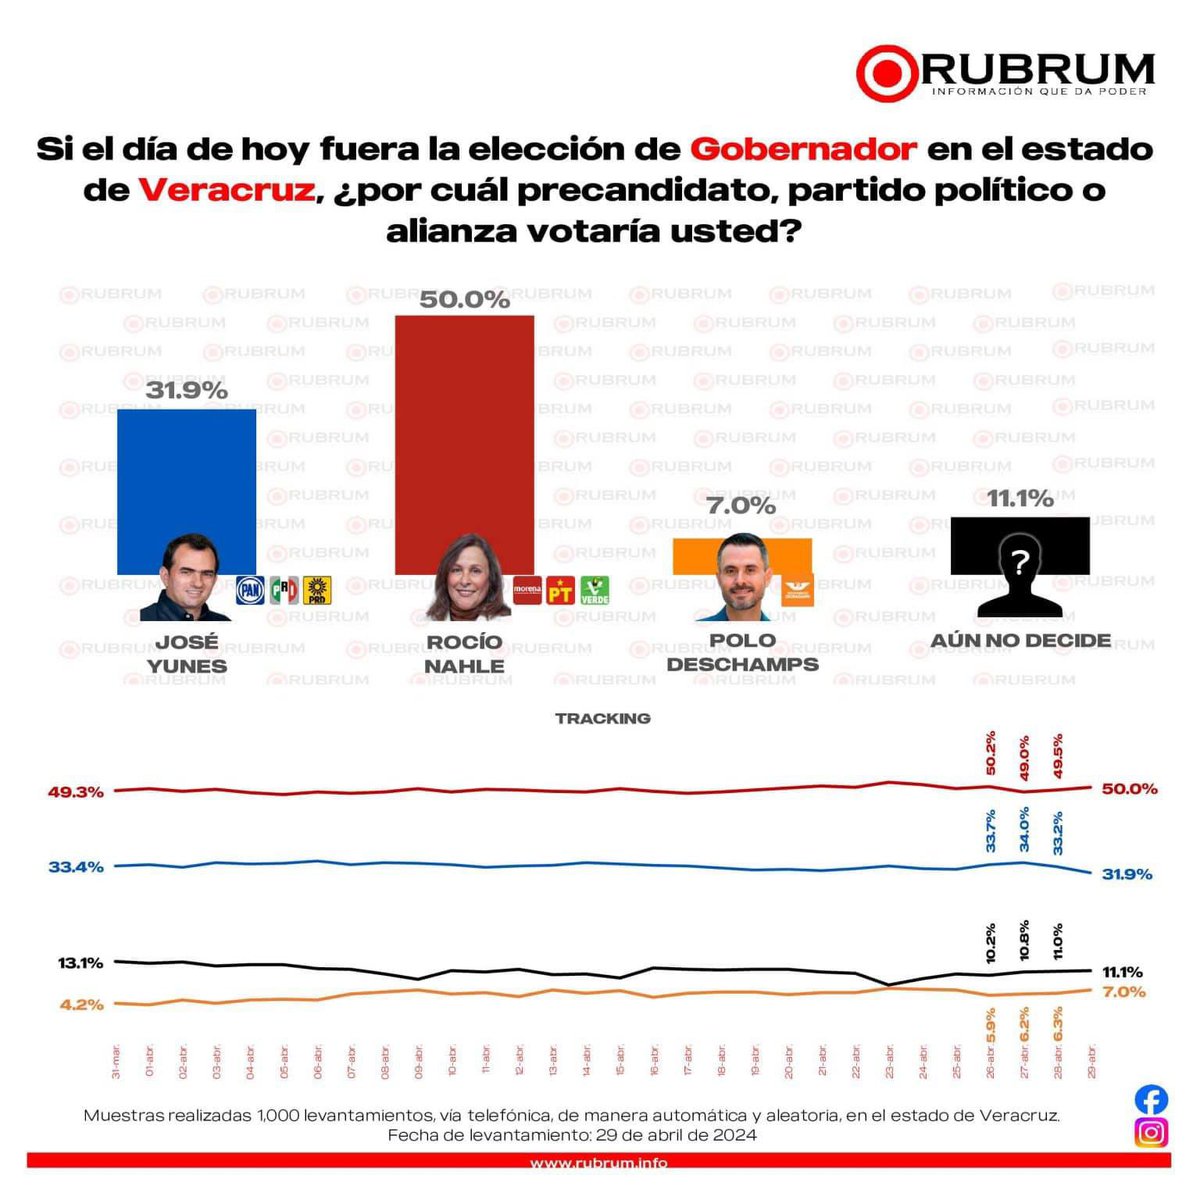 Paaaaaaa!! Ahora #RUBRUM confirma las tendencias a favor de la candidata @rocionahle #Veracruz #MORENA #Elecciones2024